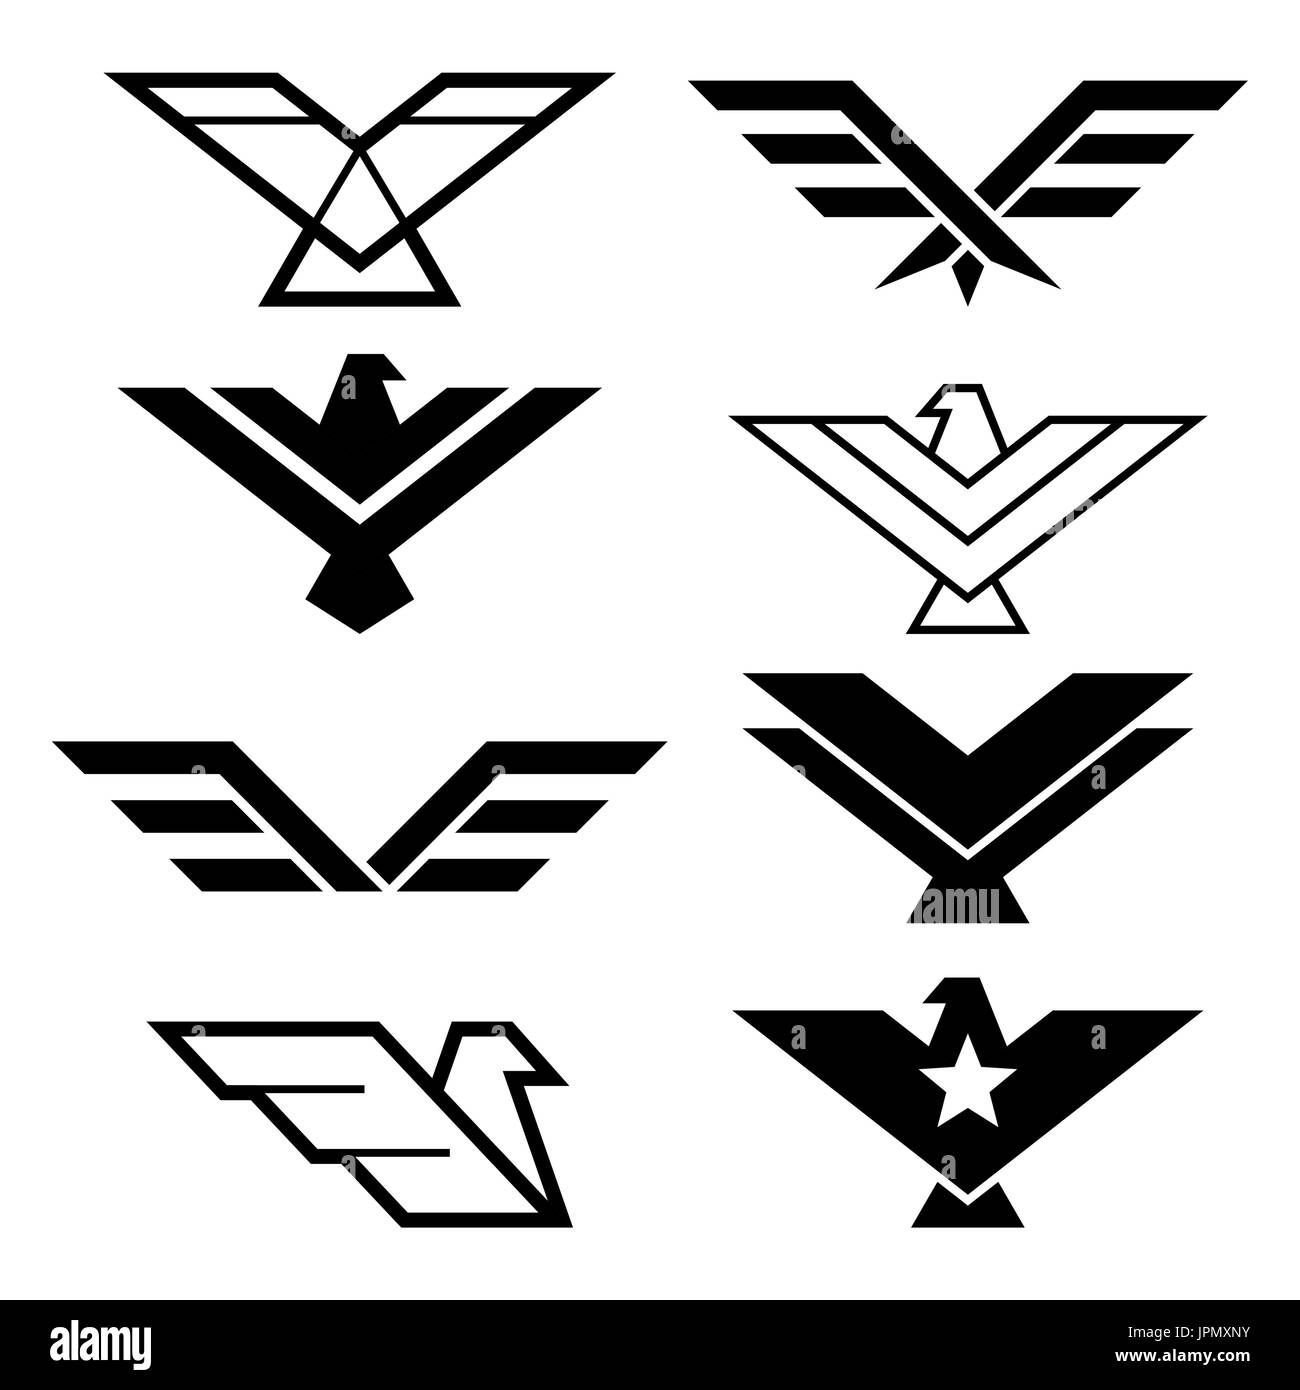 Eagle disegno geometrico, Eagle's ali vettore set di icone, aquile elementi grafici - stile moderno Illustrazione Vettoriale